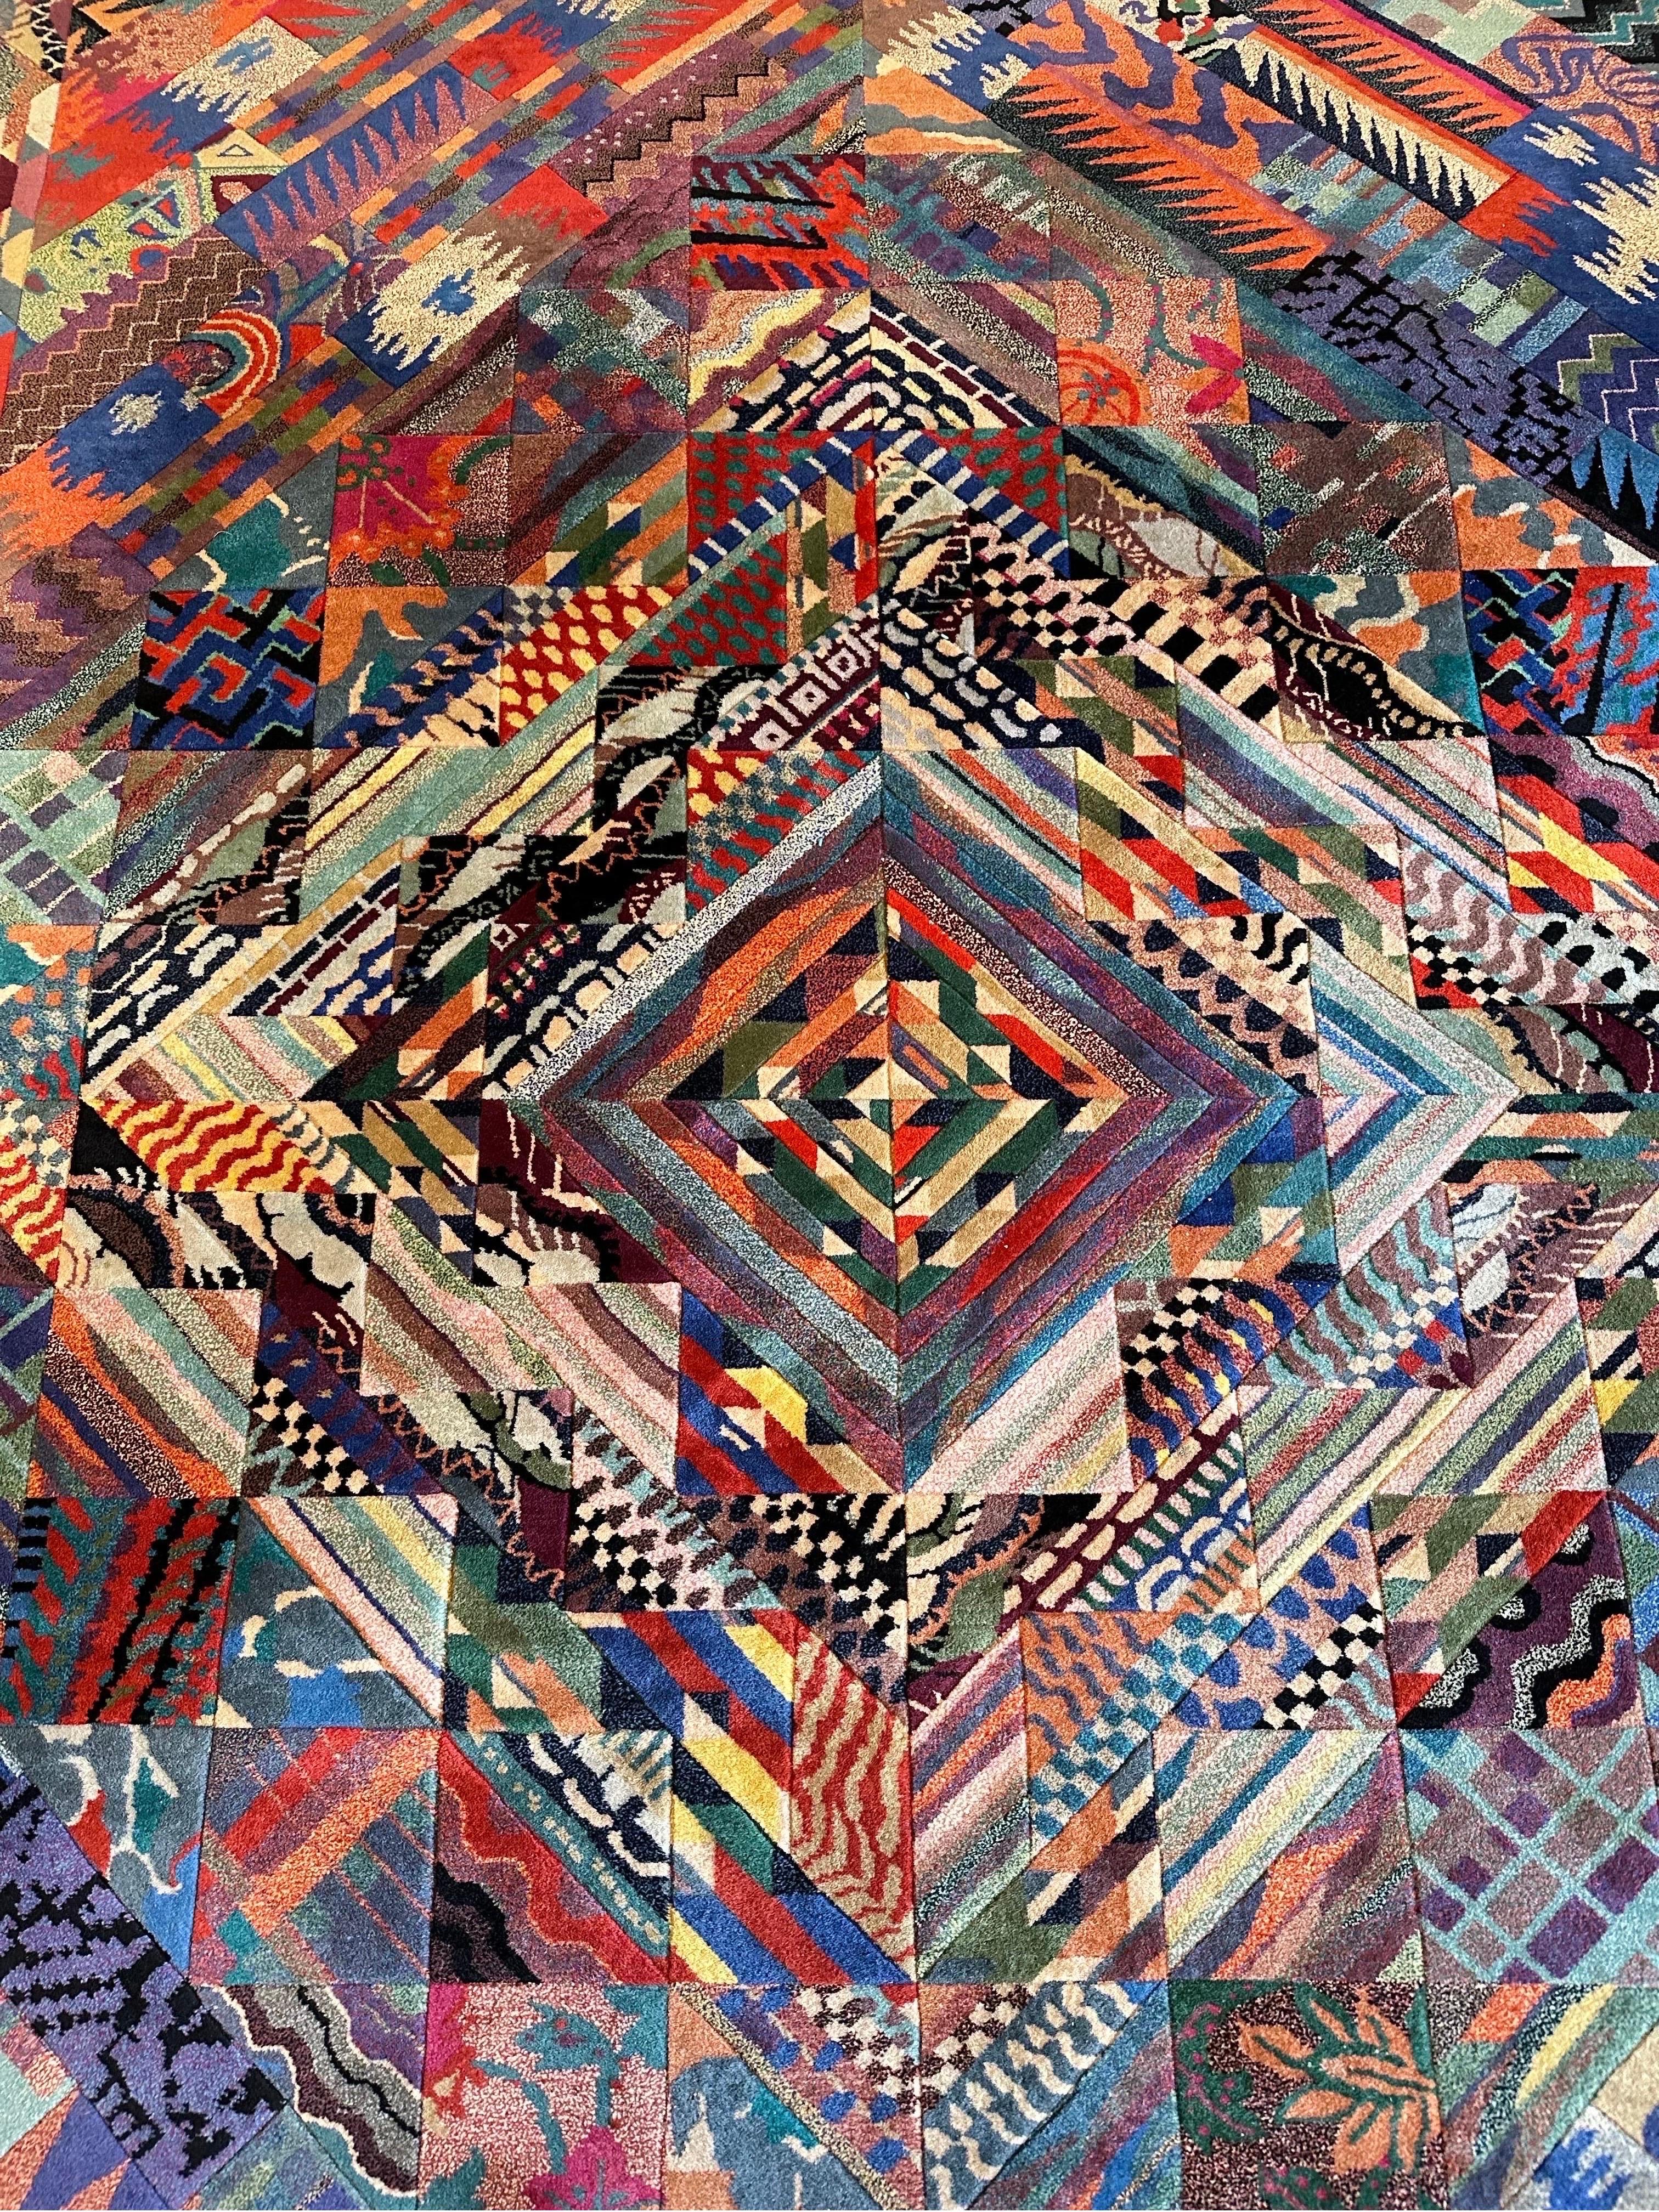 Der Missoni Casa Antares Teppich in Großformat, schöne Farbkombination Handgeknüpft Alle Wolle mit Missoni Signatur. 